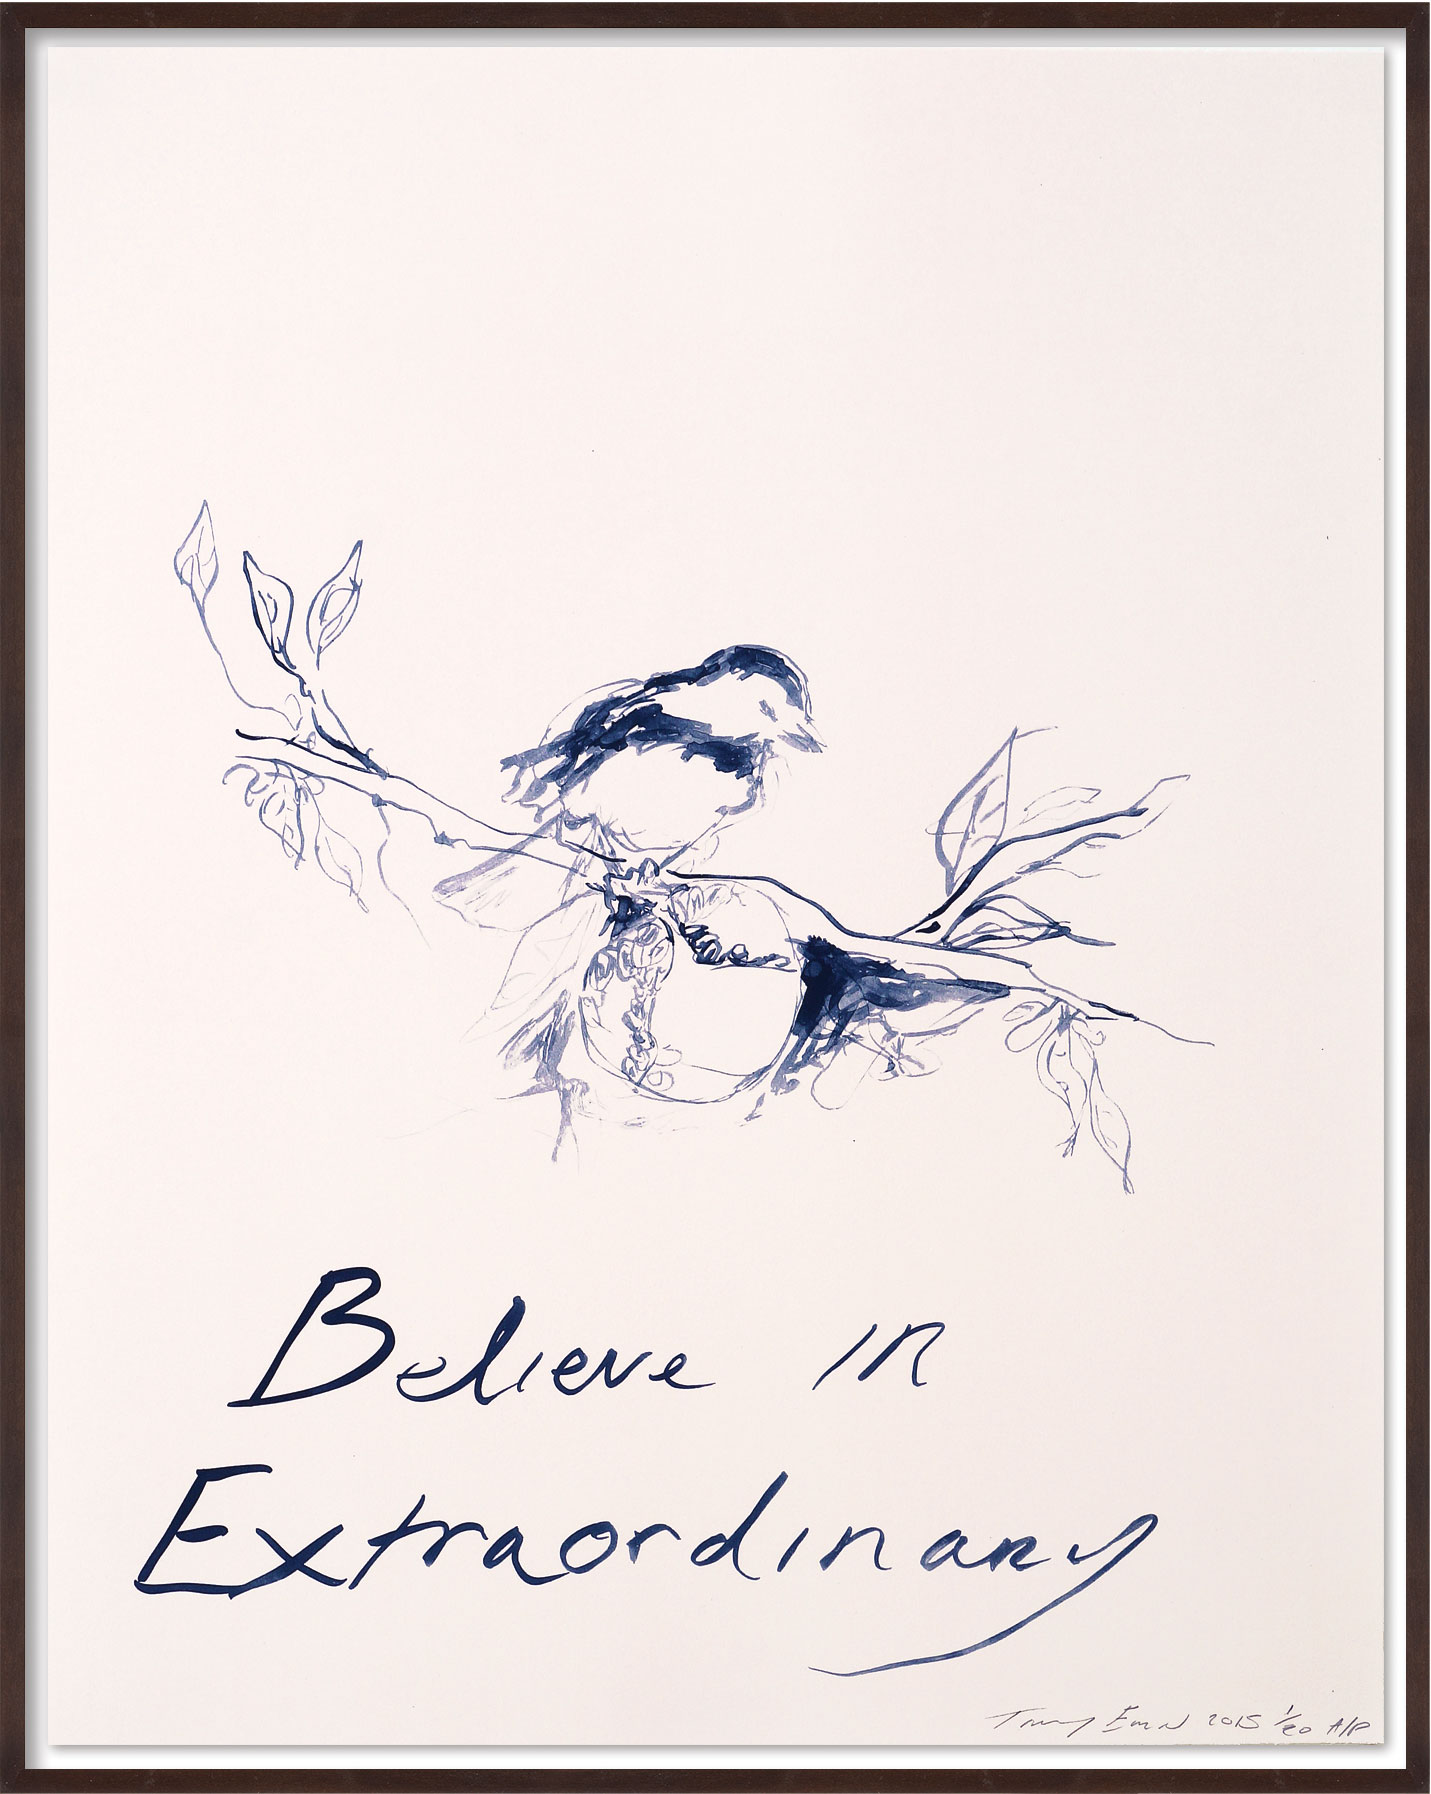 Bild "Believe in Extraordinary" (2014) von Tracey Emin